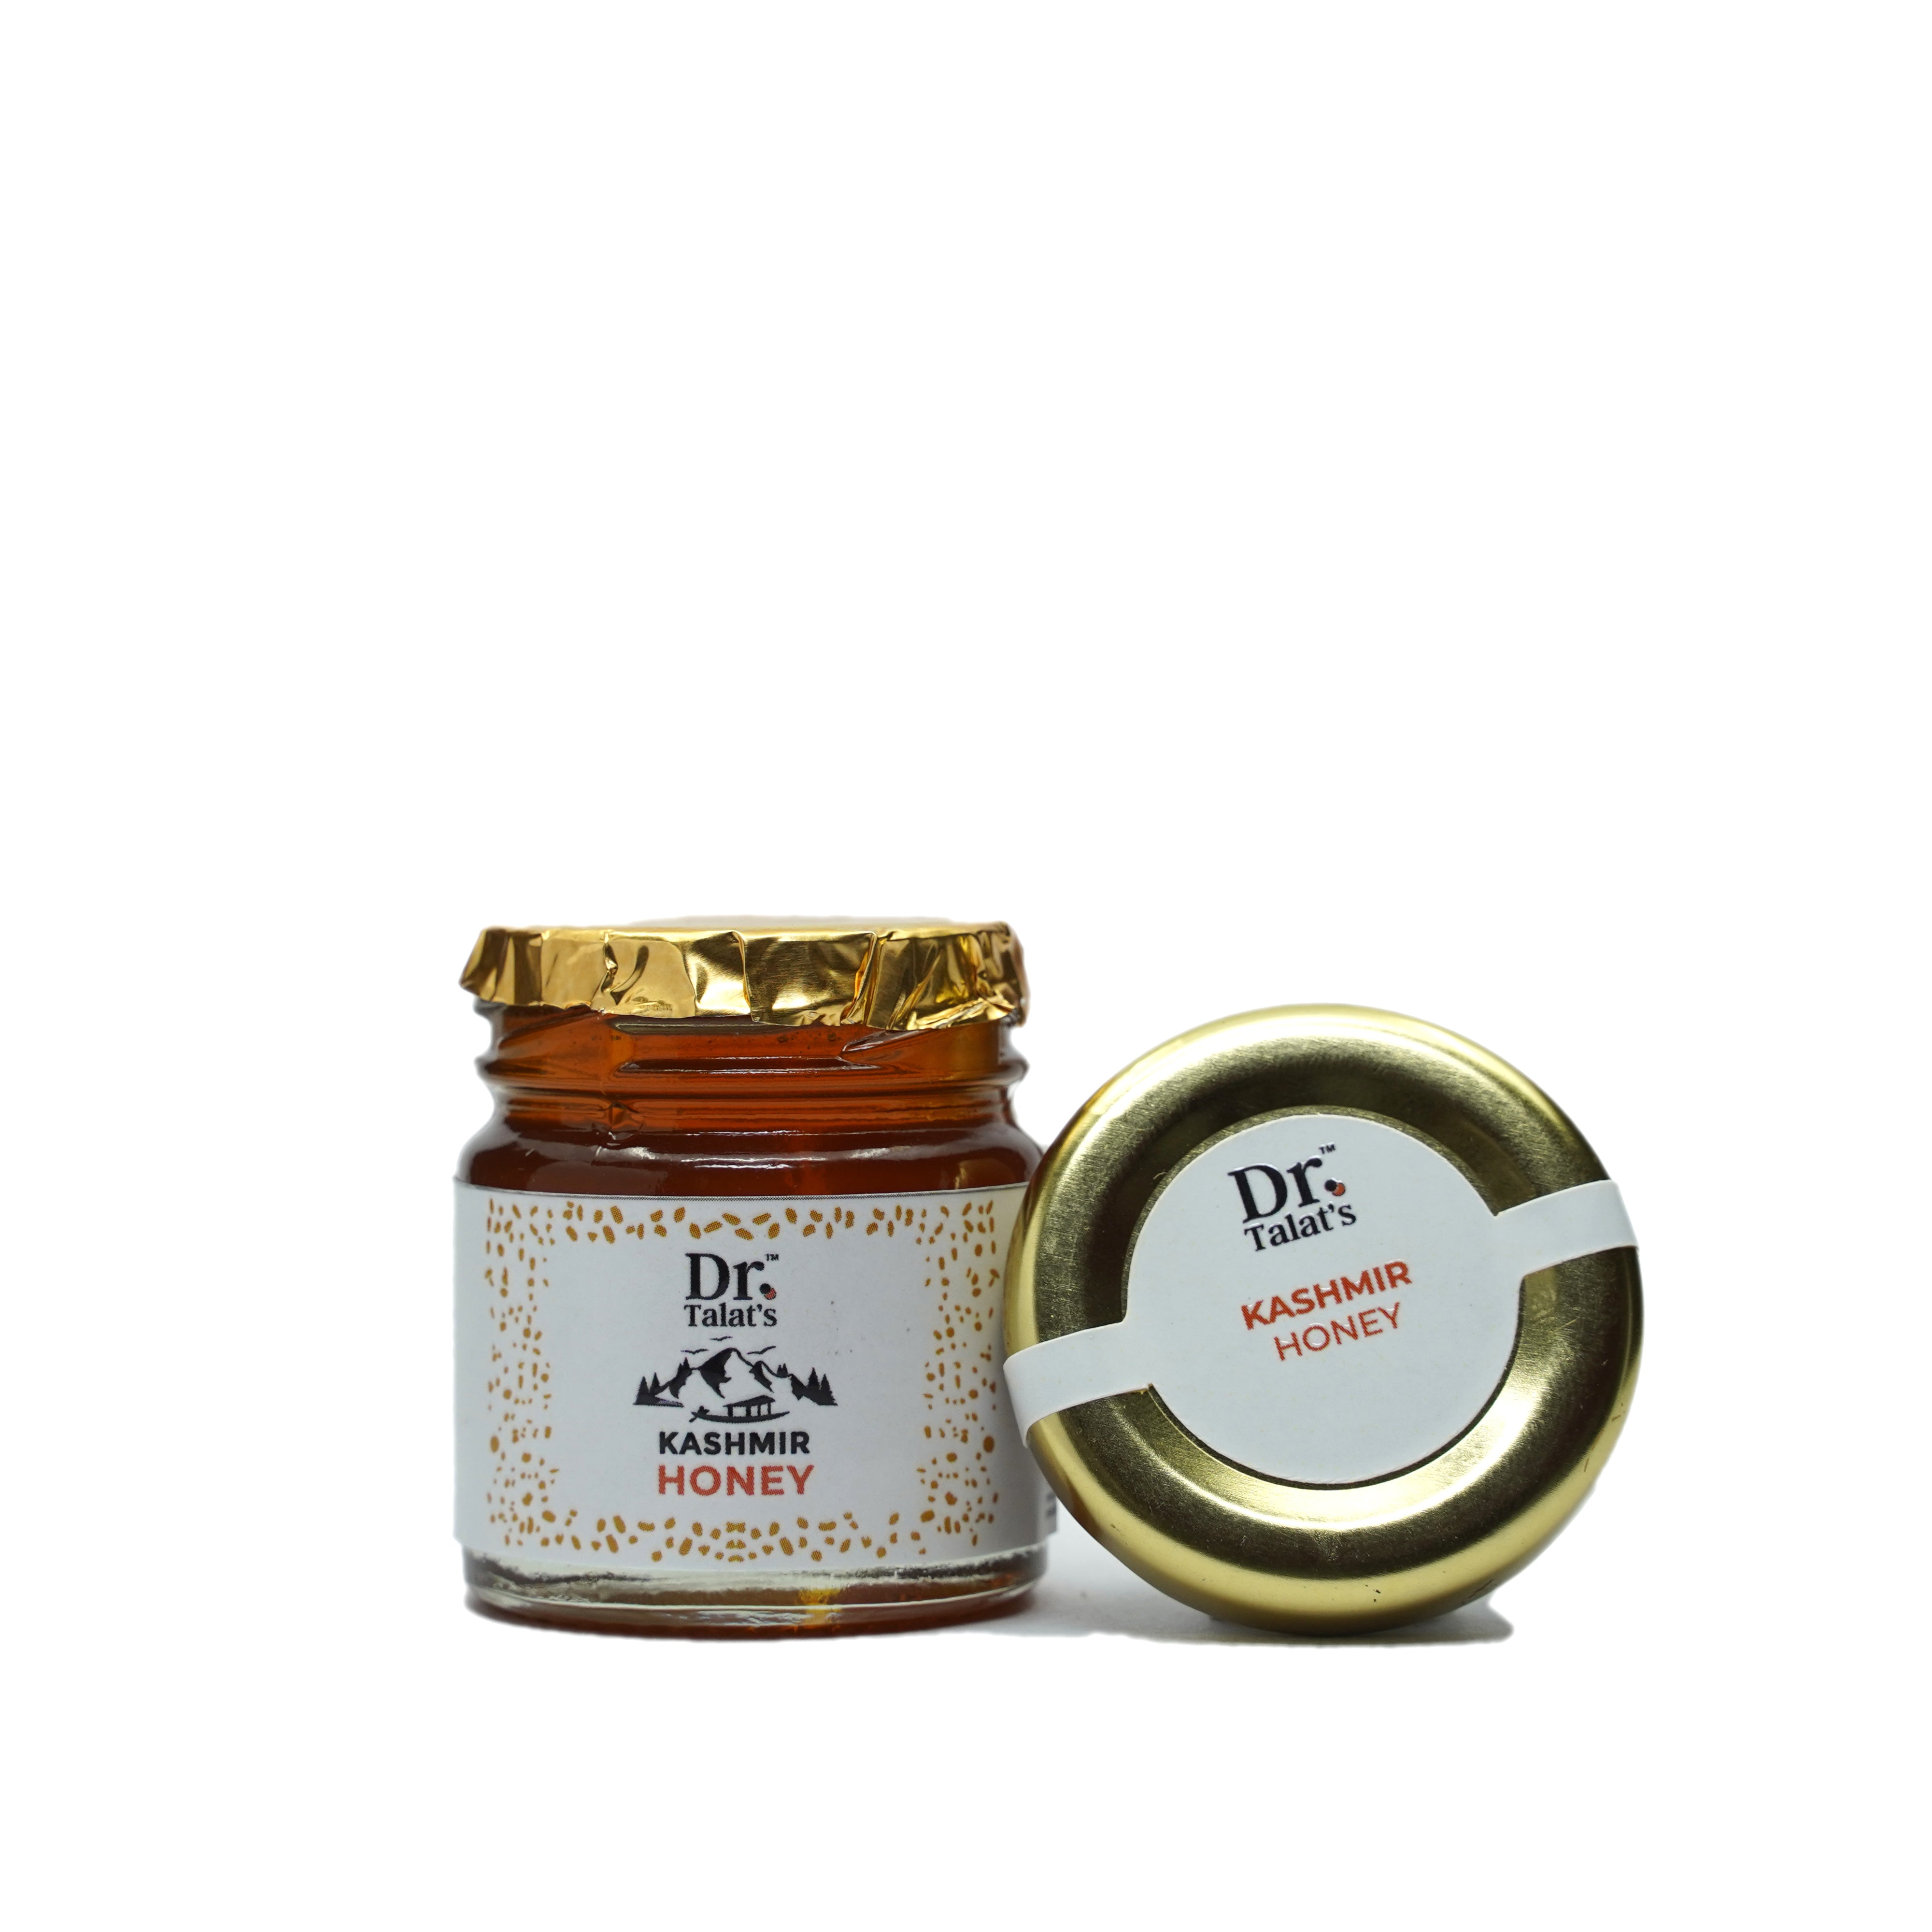 Kashmir Honey (Agmark Special Grade)